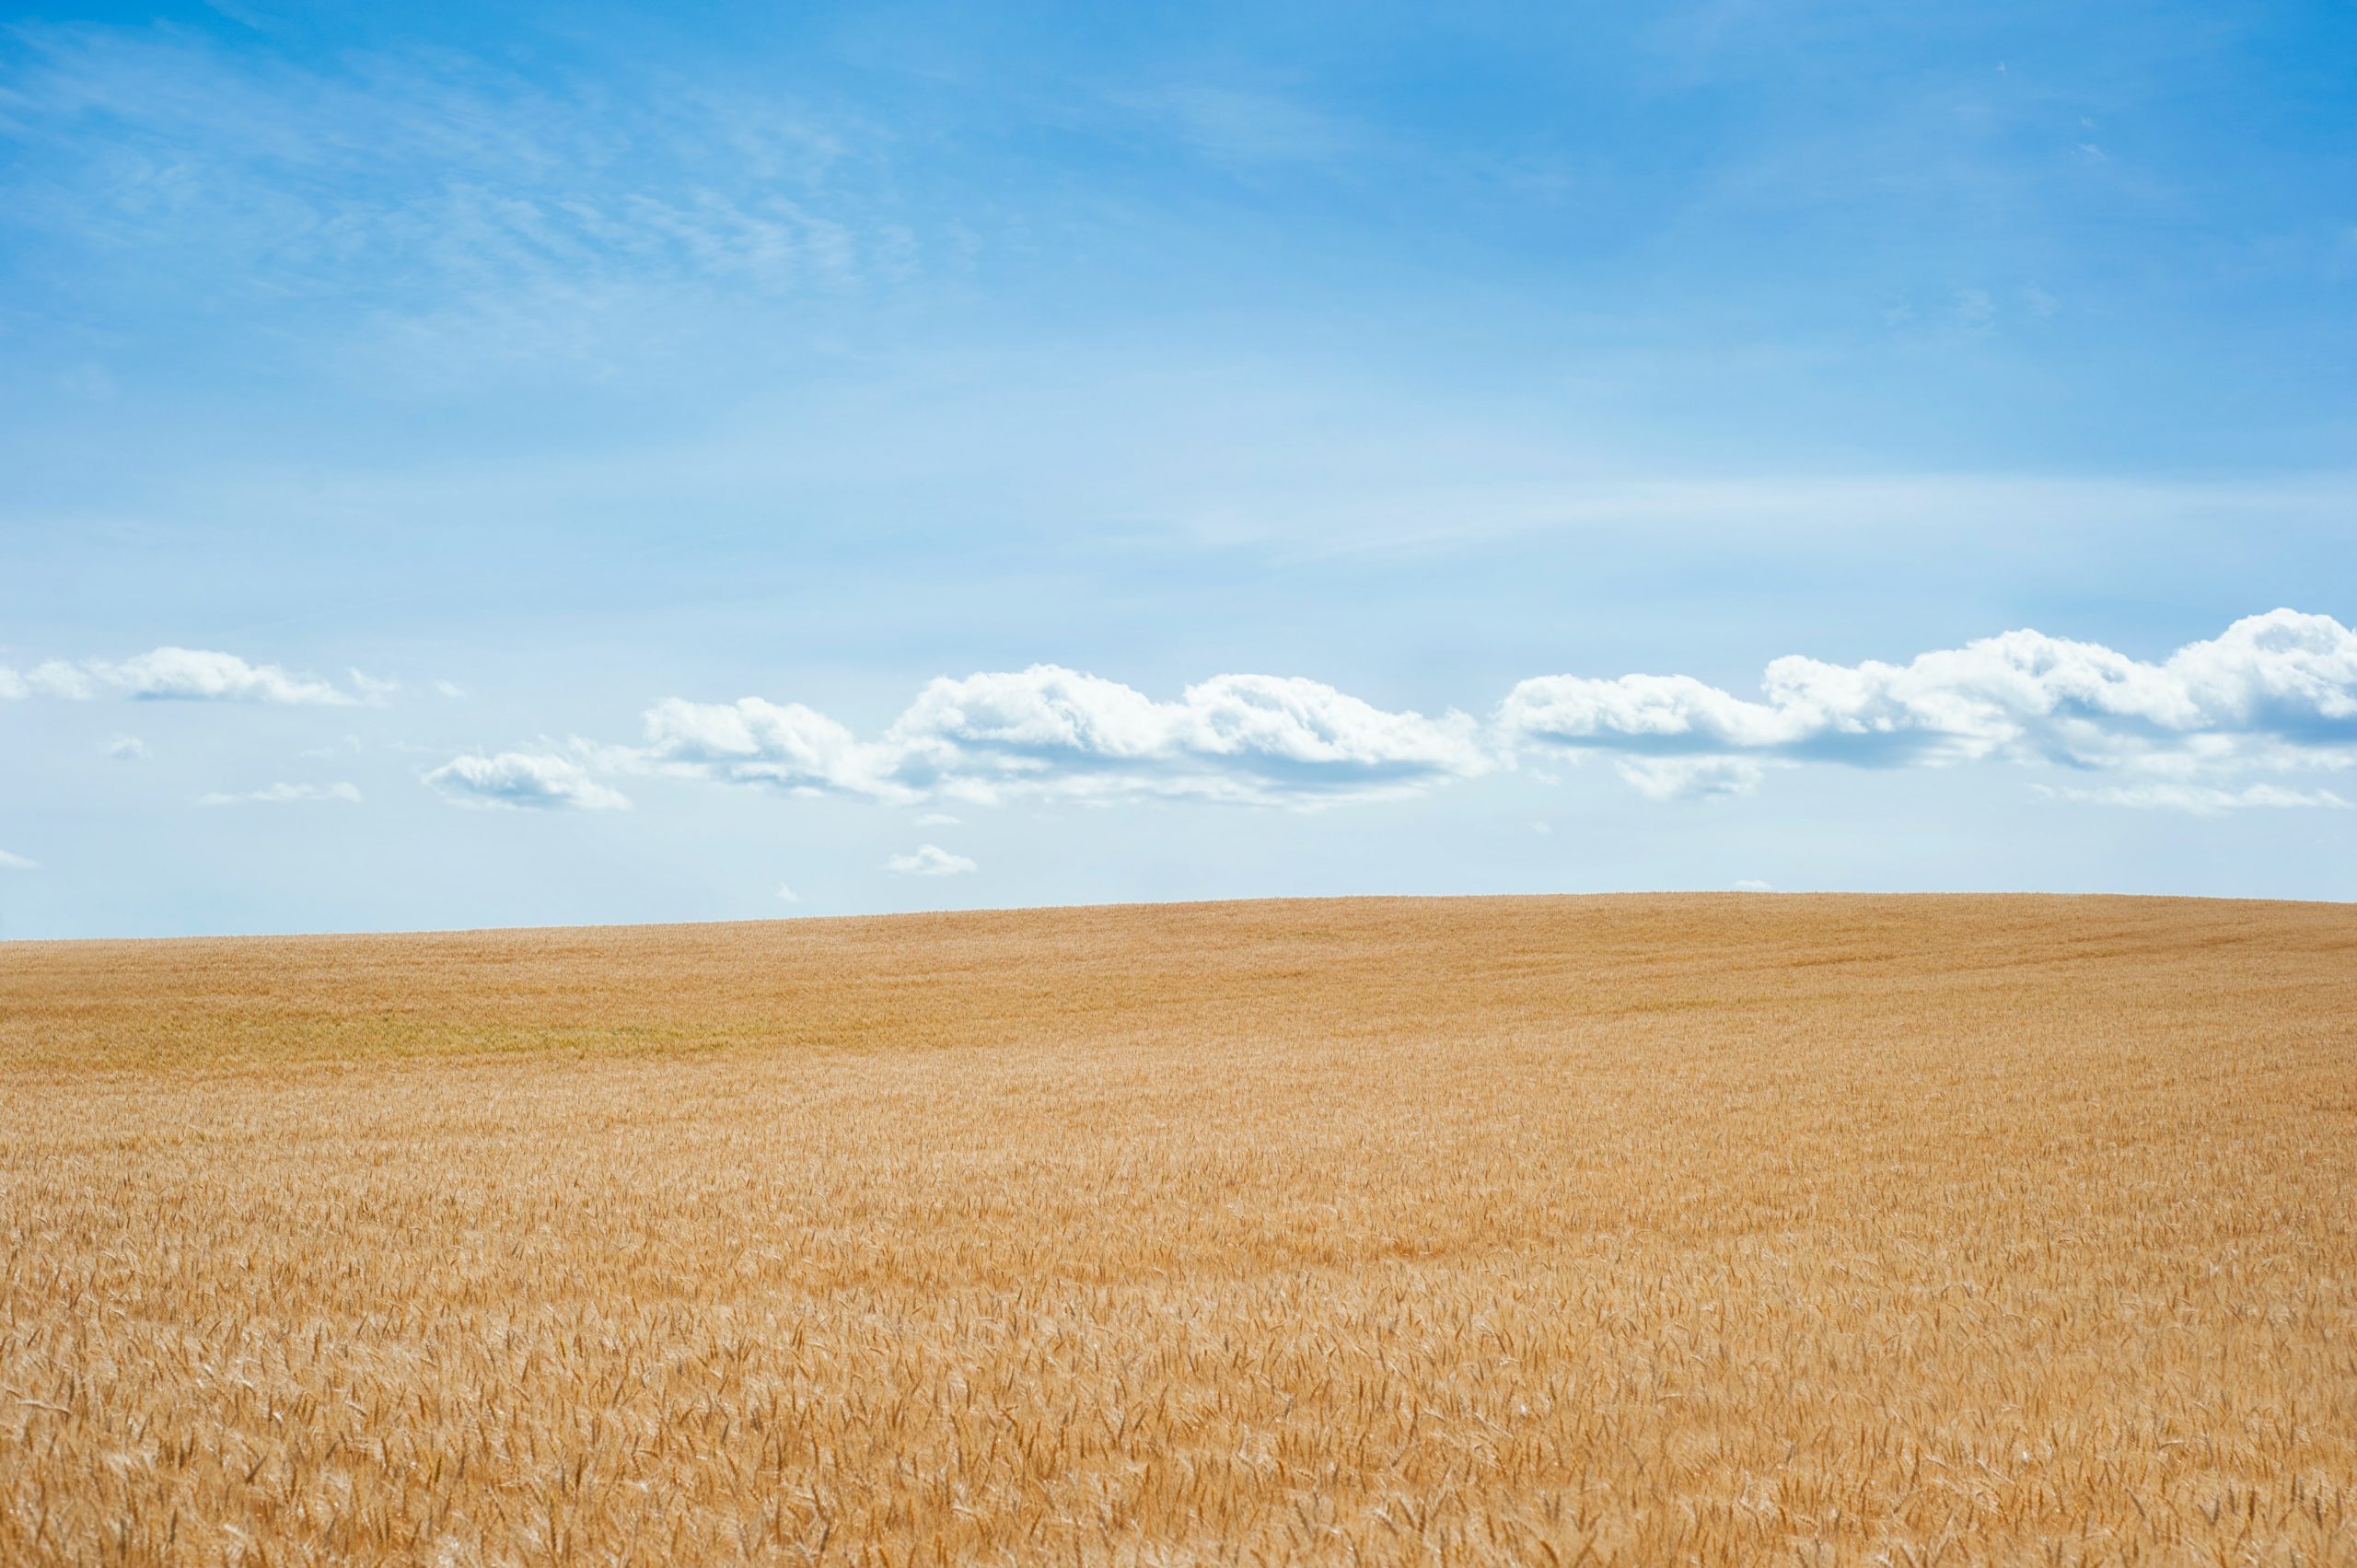 Une photographie d'un champ de blé vide et doré. Au-dessus du champ, le ciel est d'un bleu éclatant et des nuages blancs cotonneux flottent.